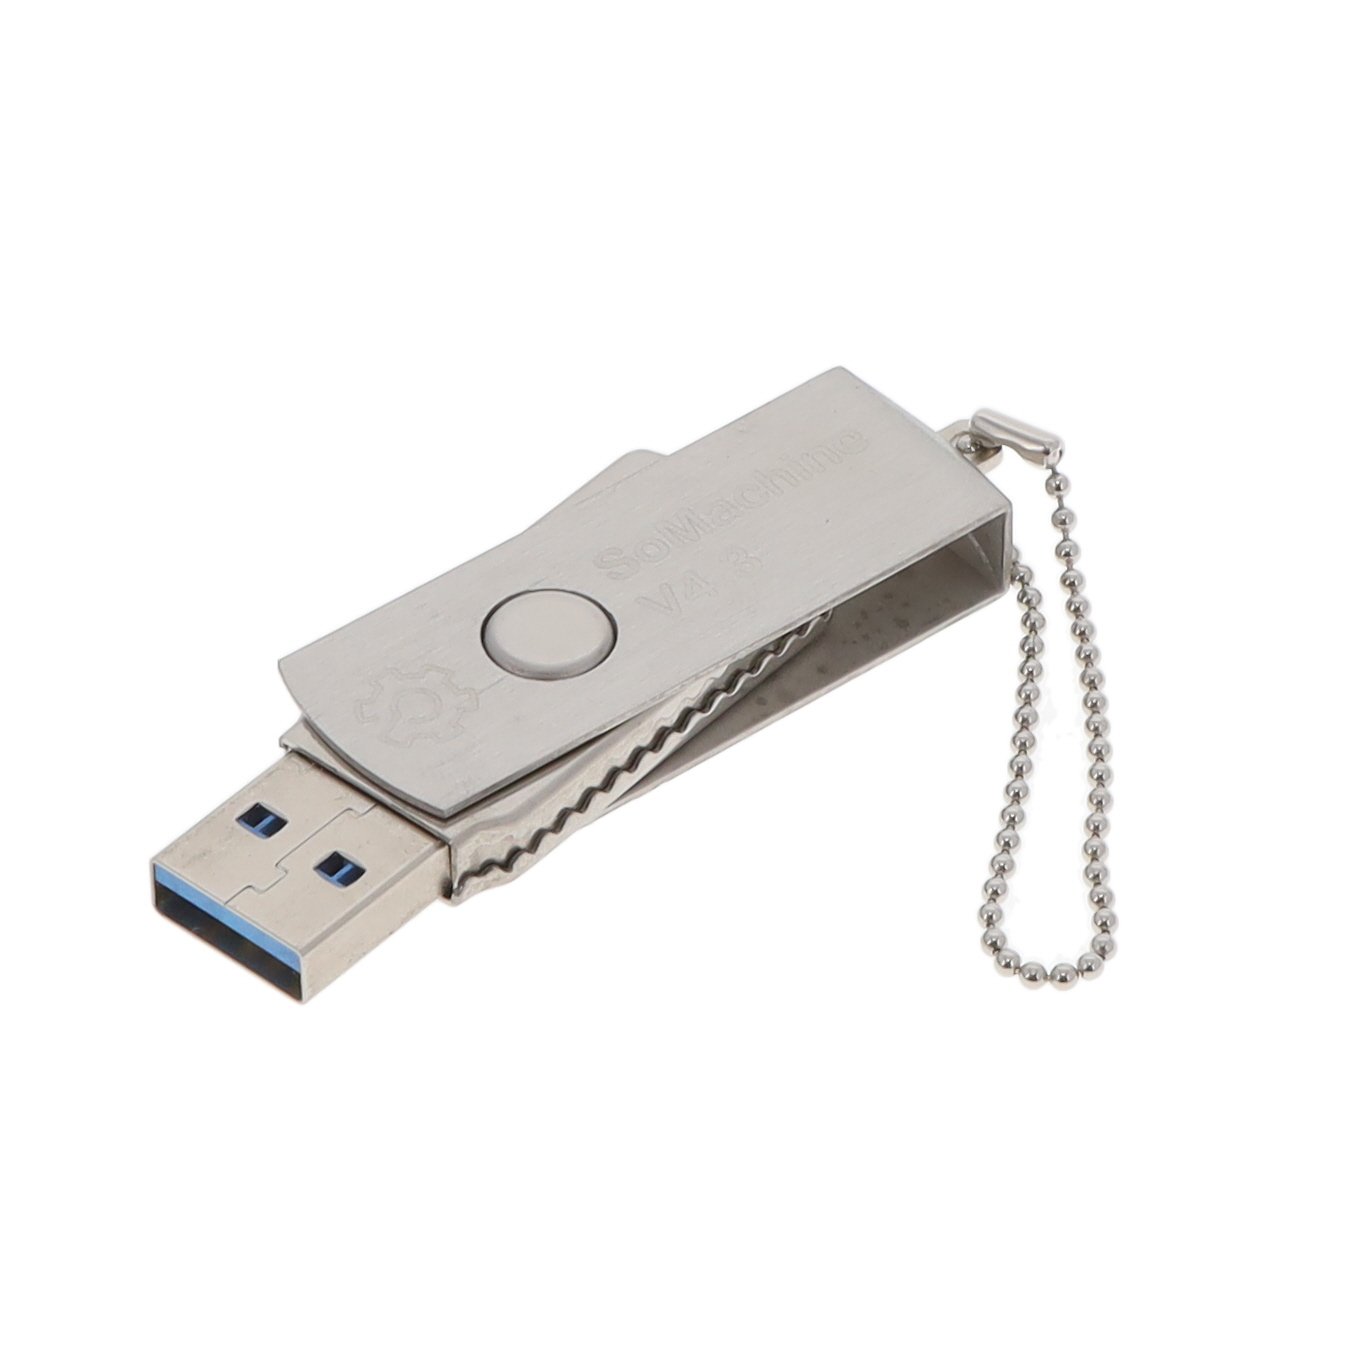 【SOMNACCZXSPAZZ】S0MACHINE 4.3 USB WITH 1 USER LI